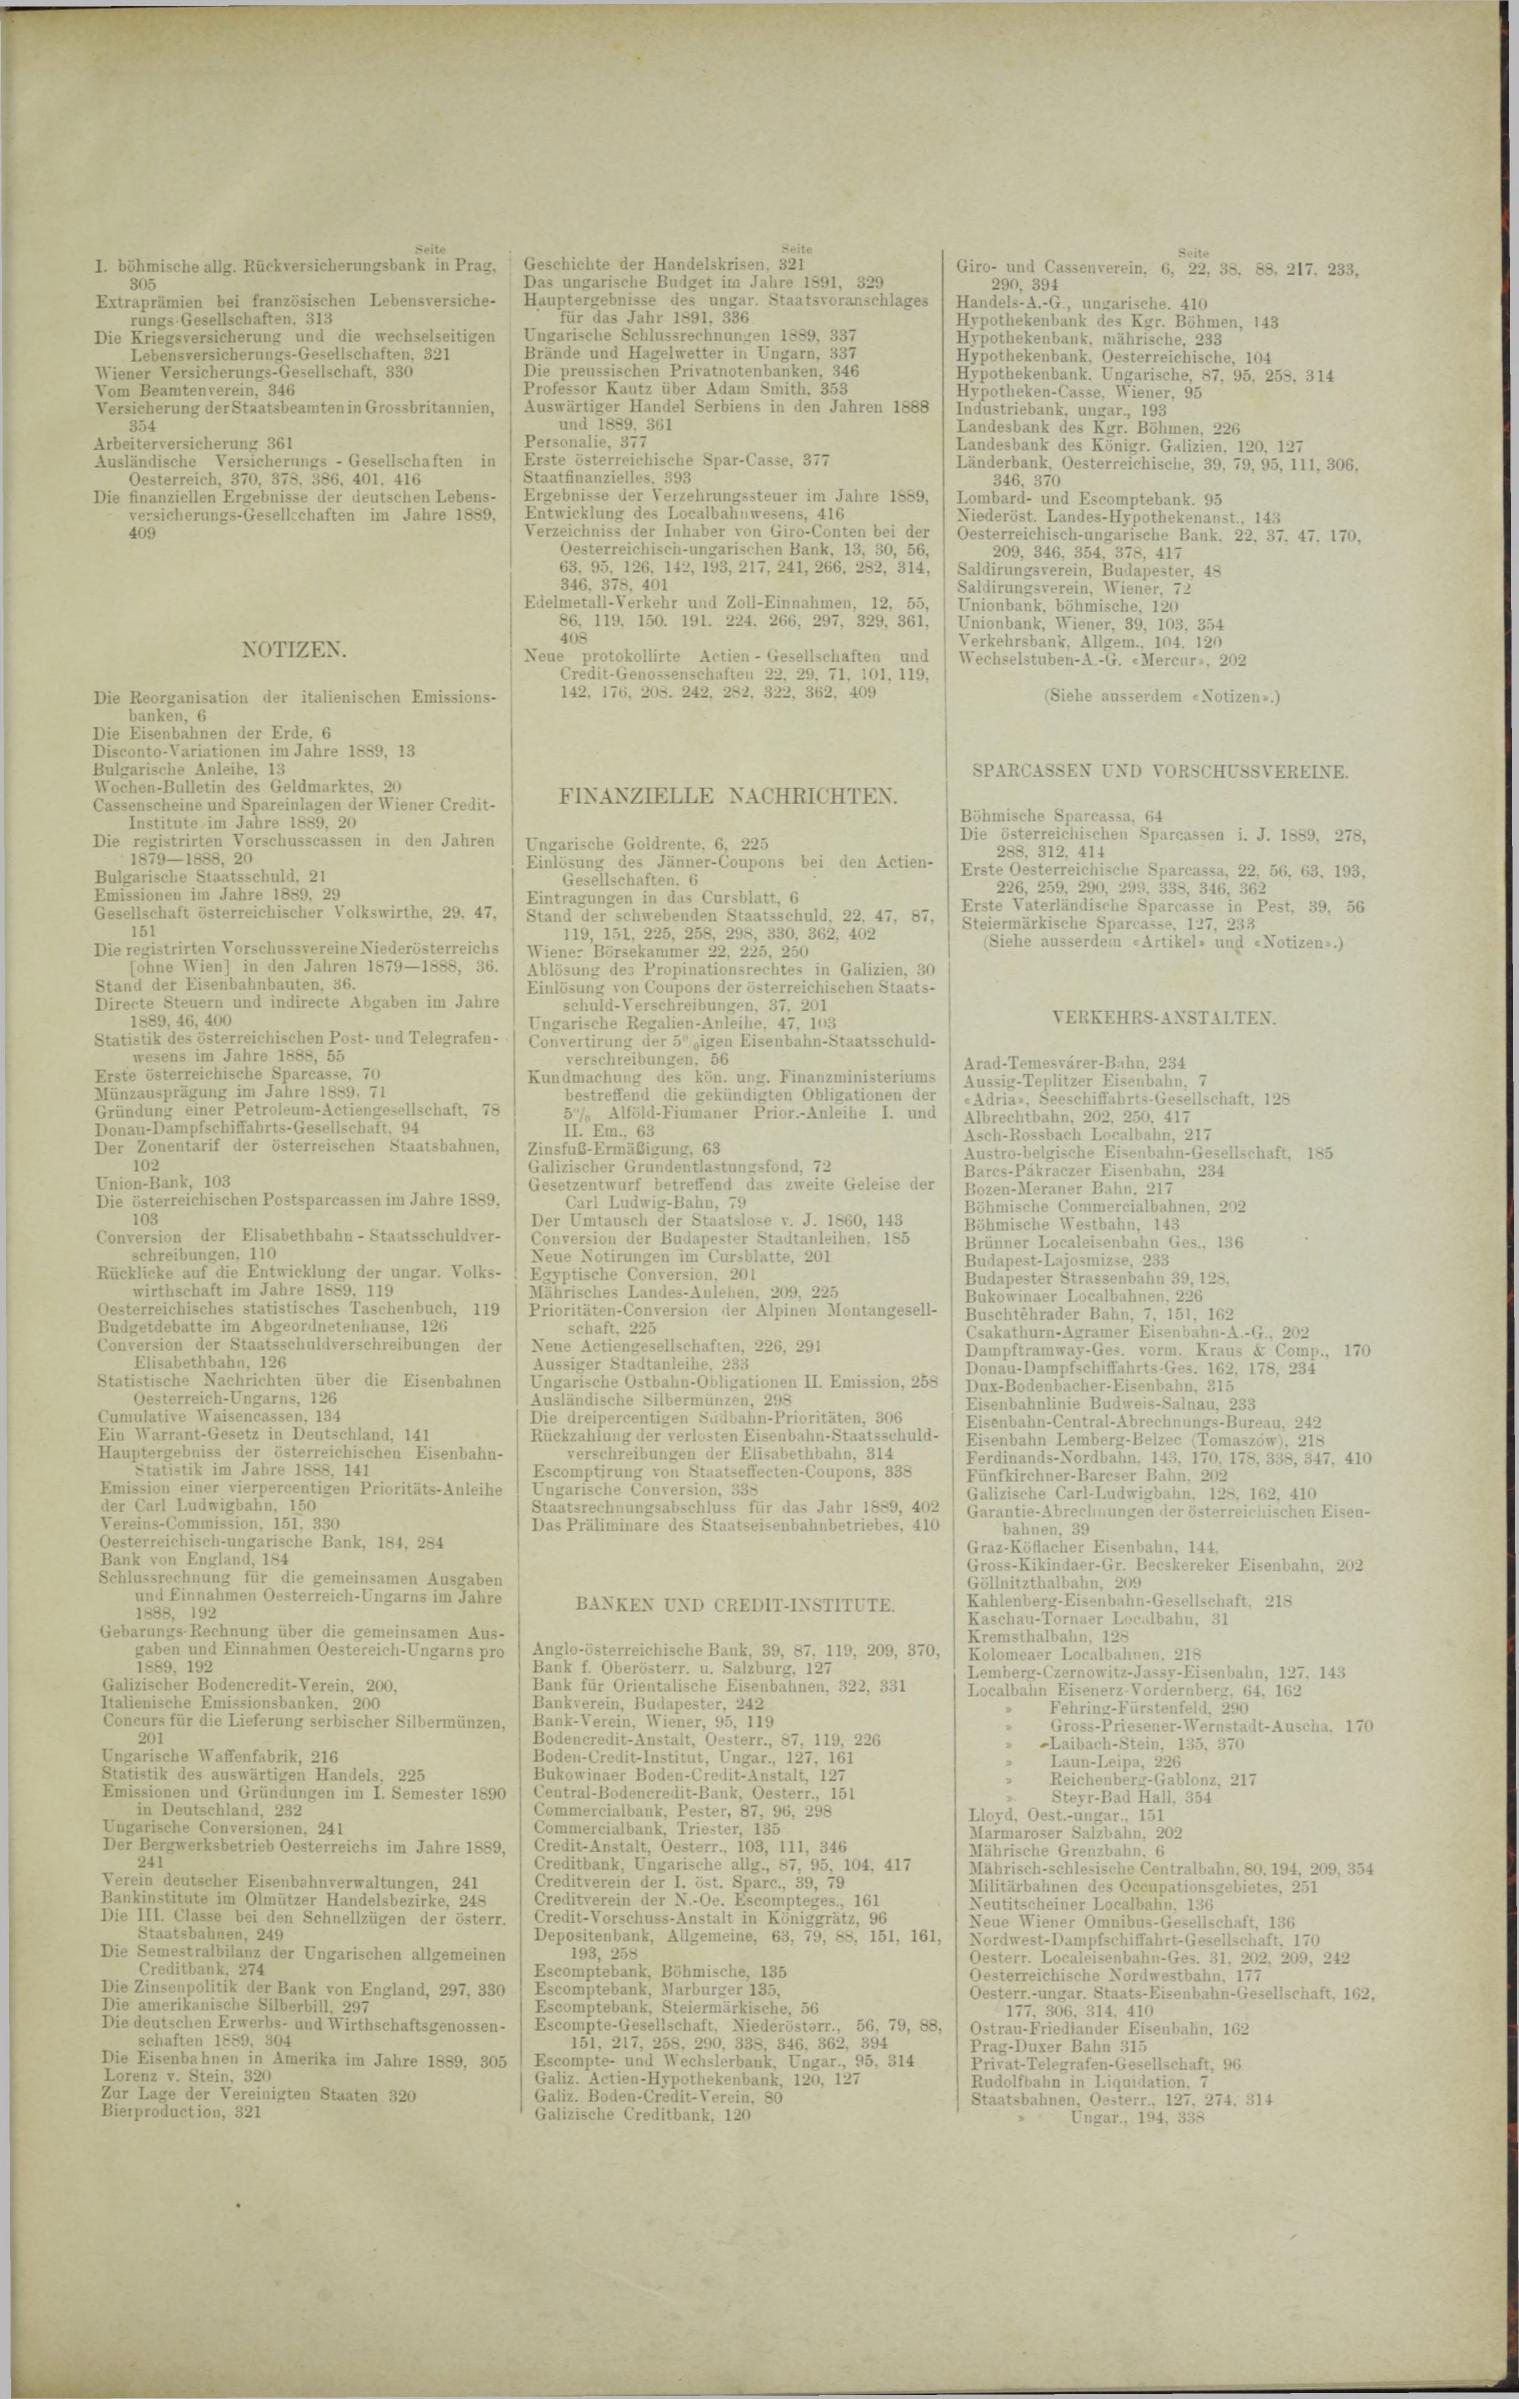 Der Tresor 09.10.1890 - Seite 11